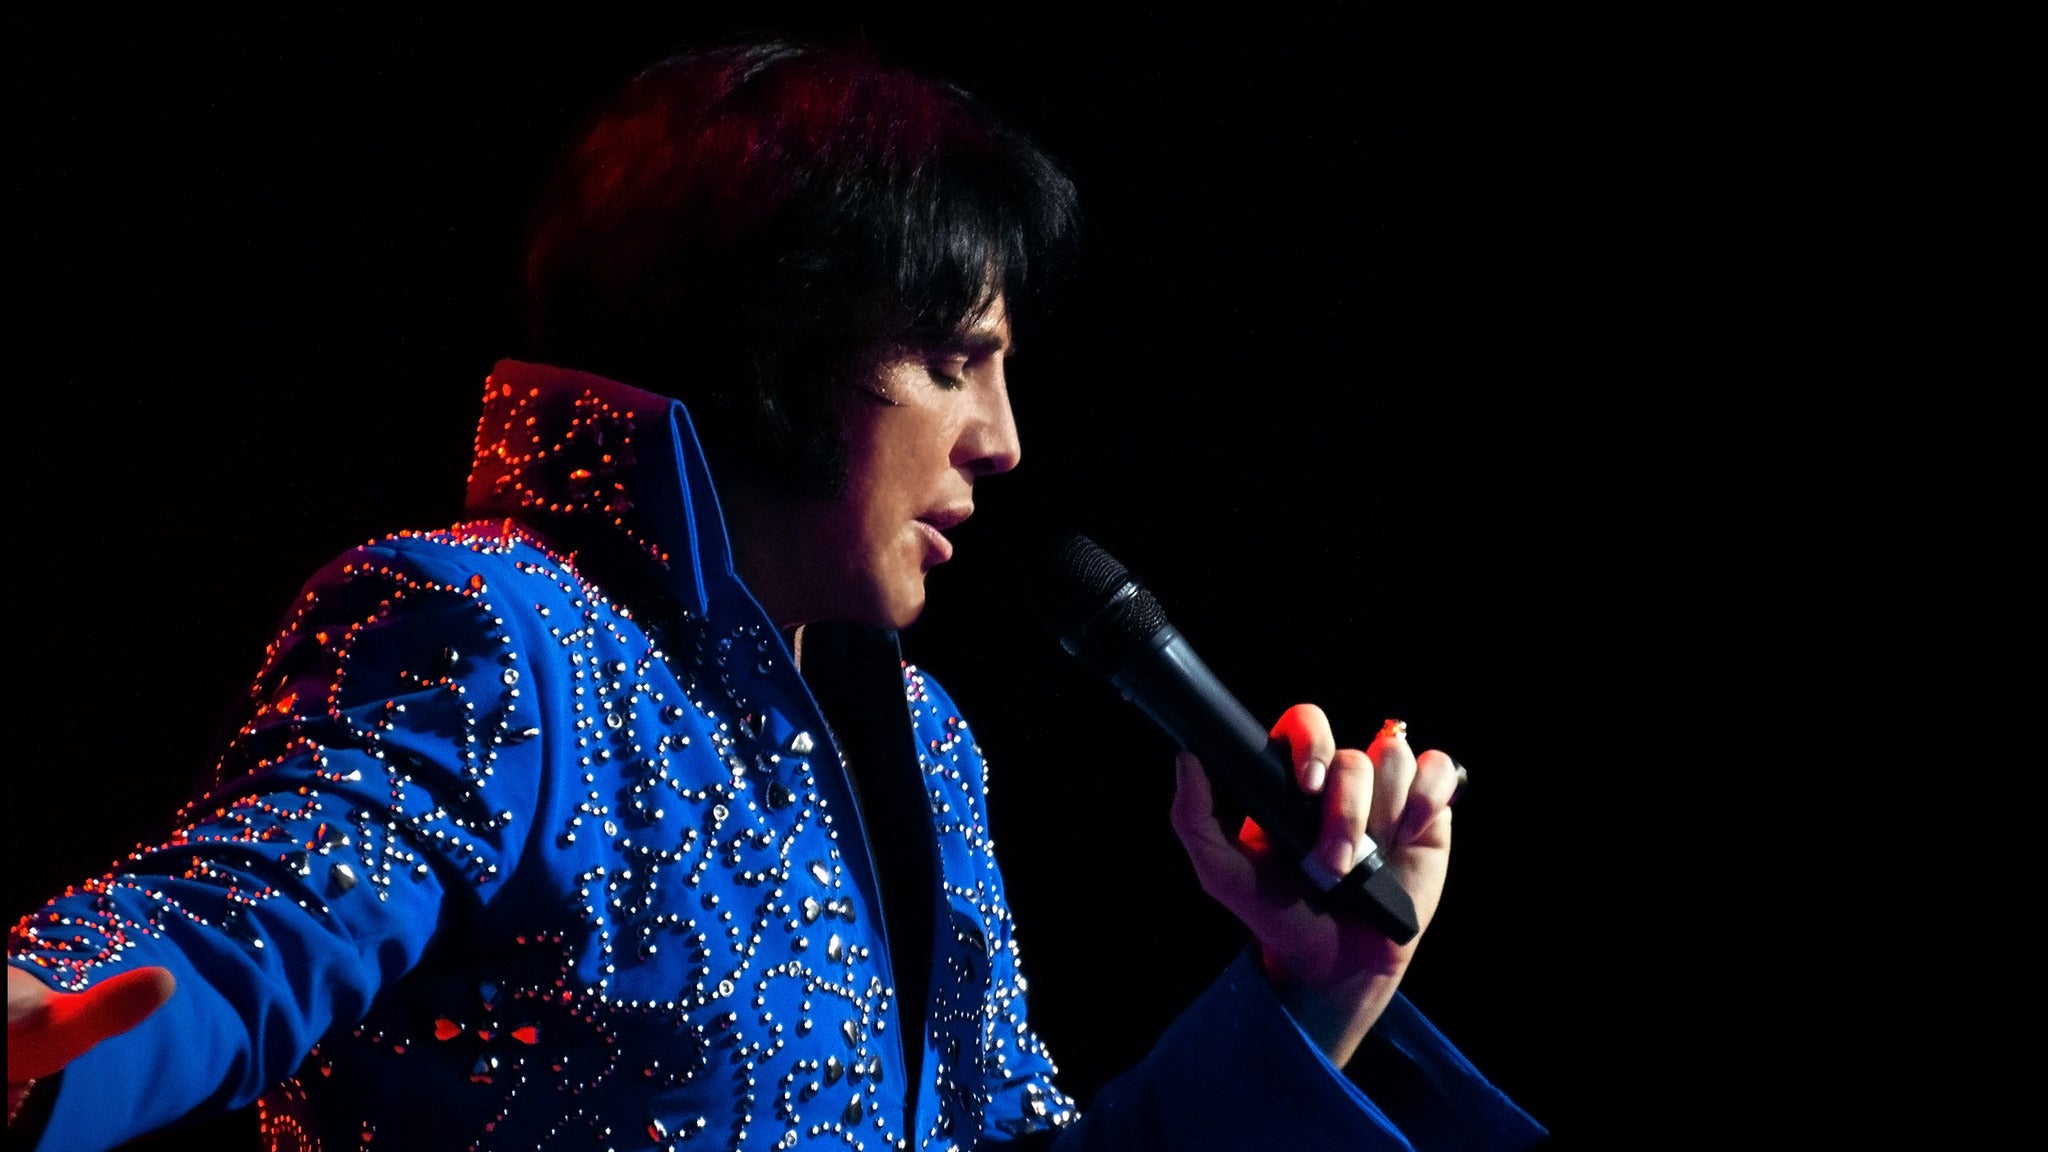 Elvis Tribute Artist Spectacular